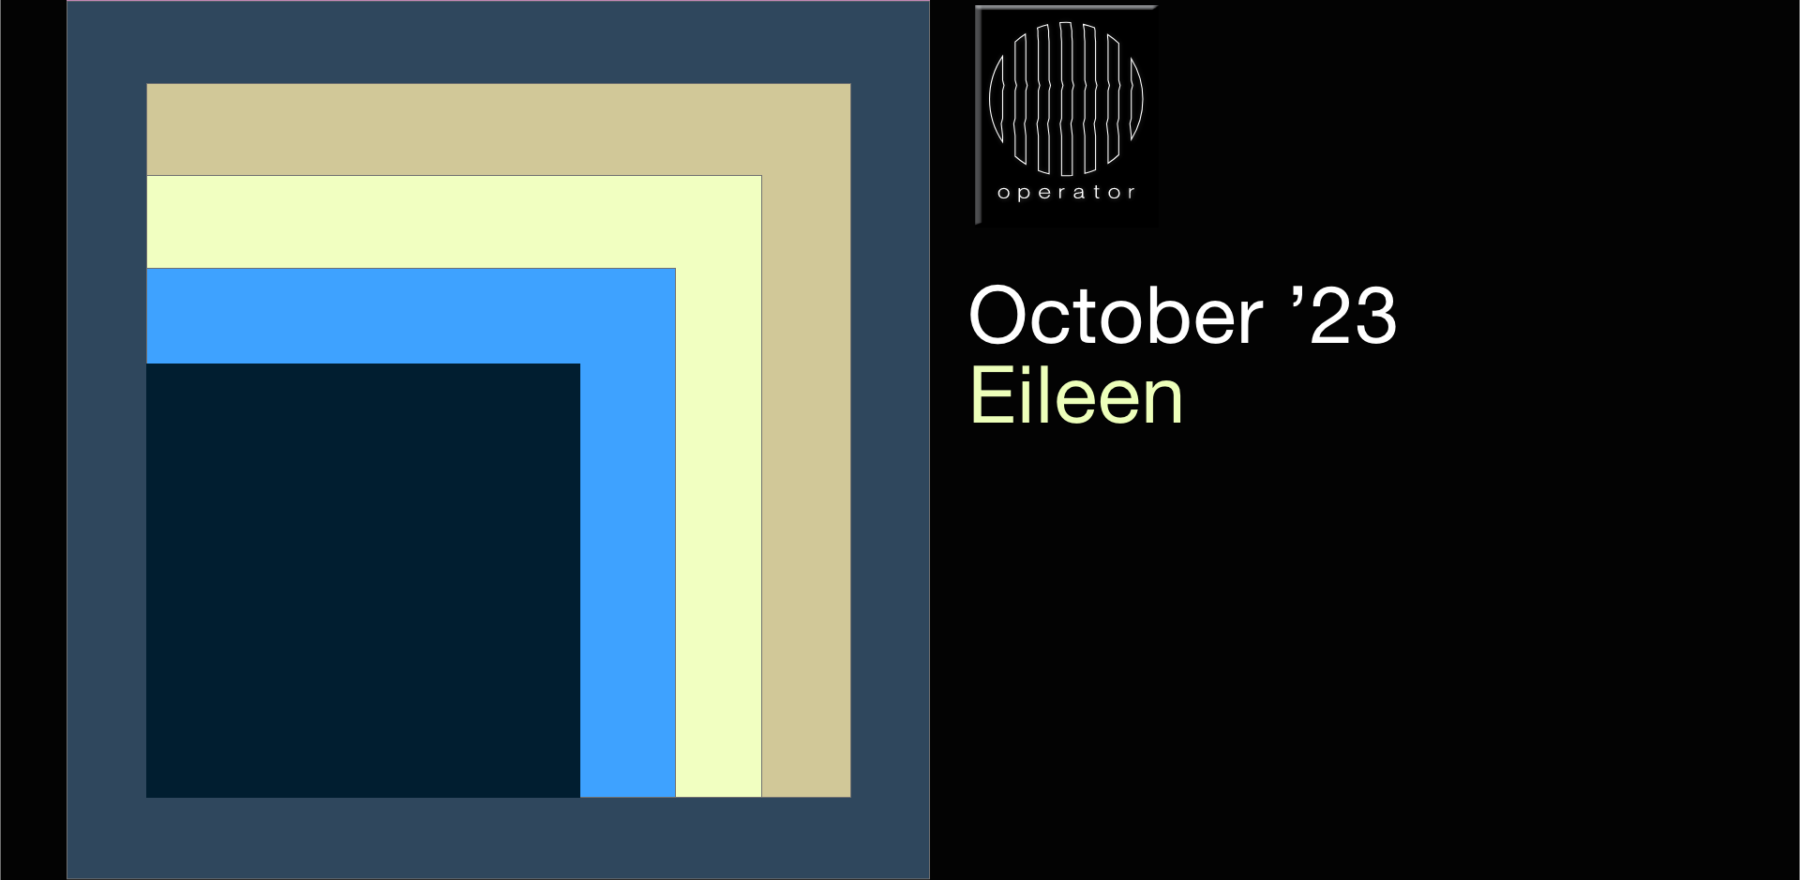 Playlist oktober '23 - Operator invites Eileen